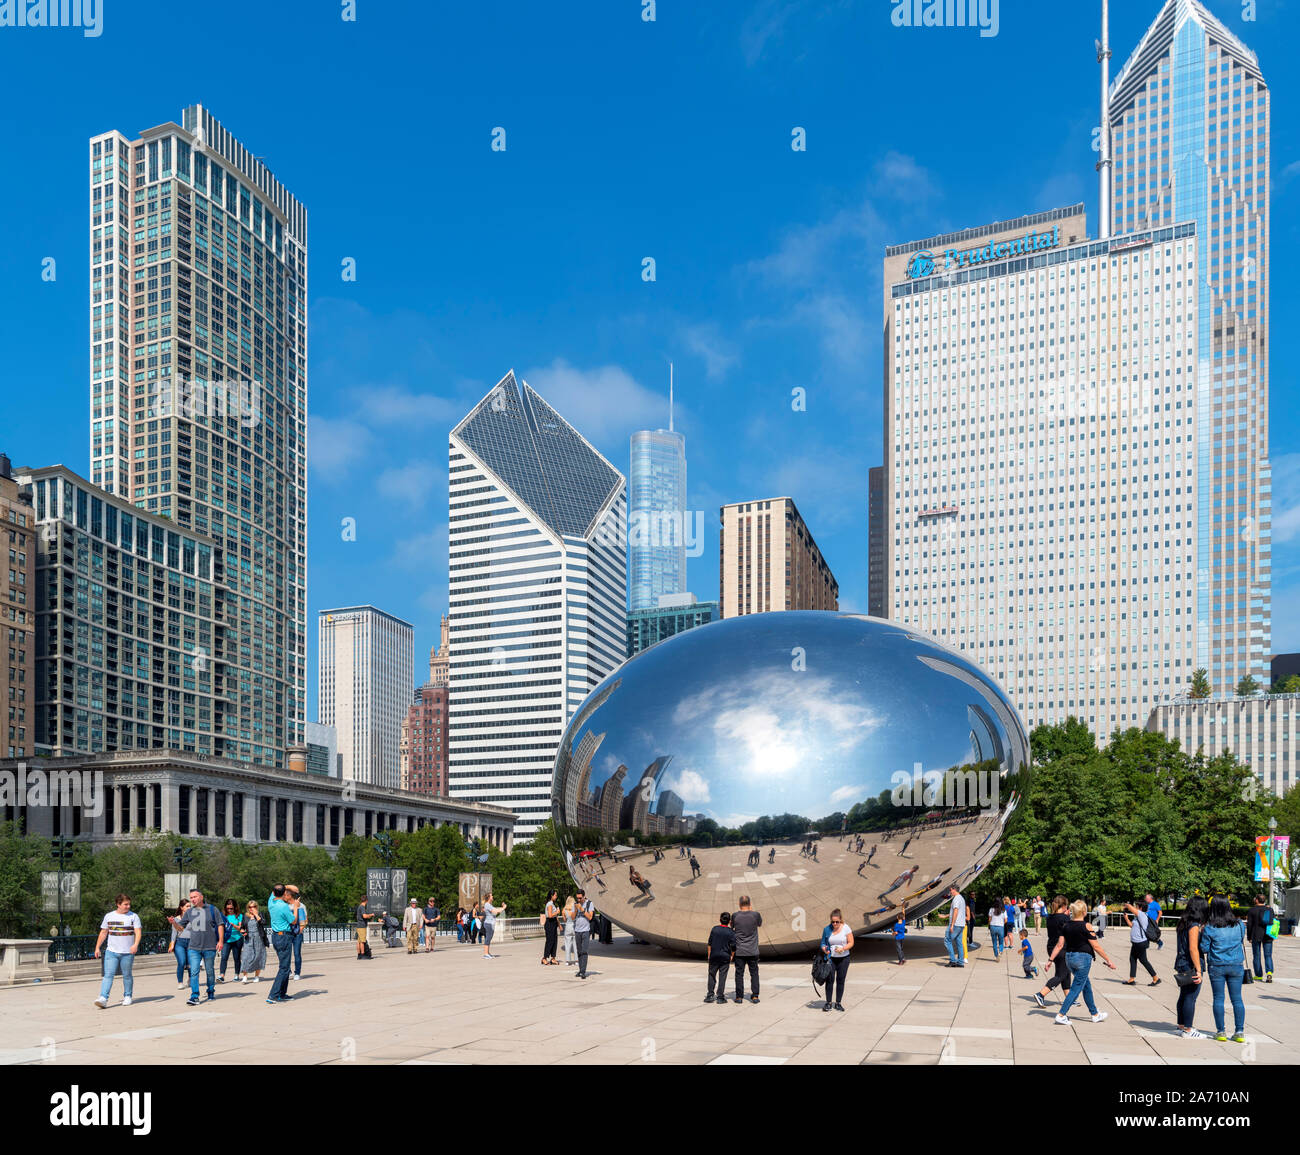 Anish Kapoor's 'Cloud Gate' sculpture dans le Parc Millennium avec le centre-ville derrière, Chicago, Illinois, États-Unis Banque D'Images